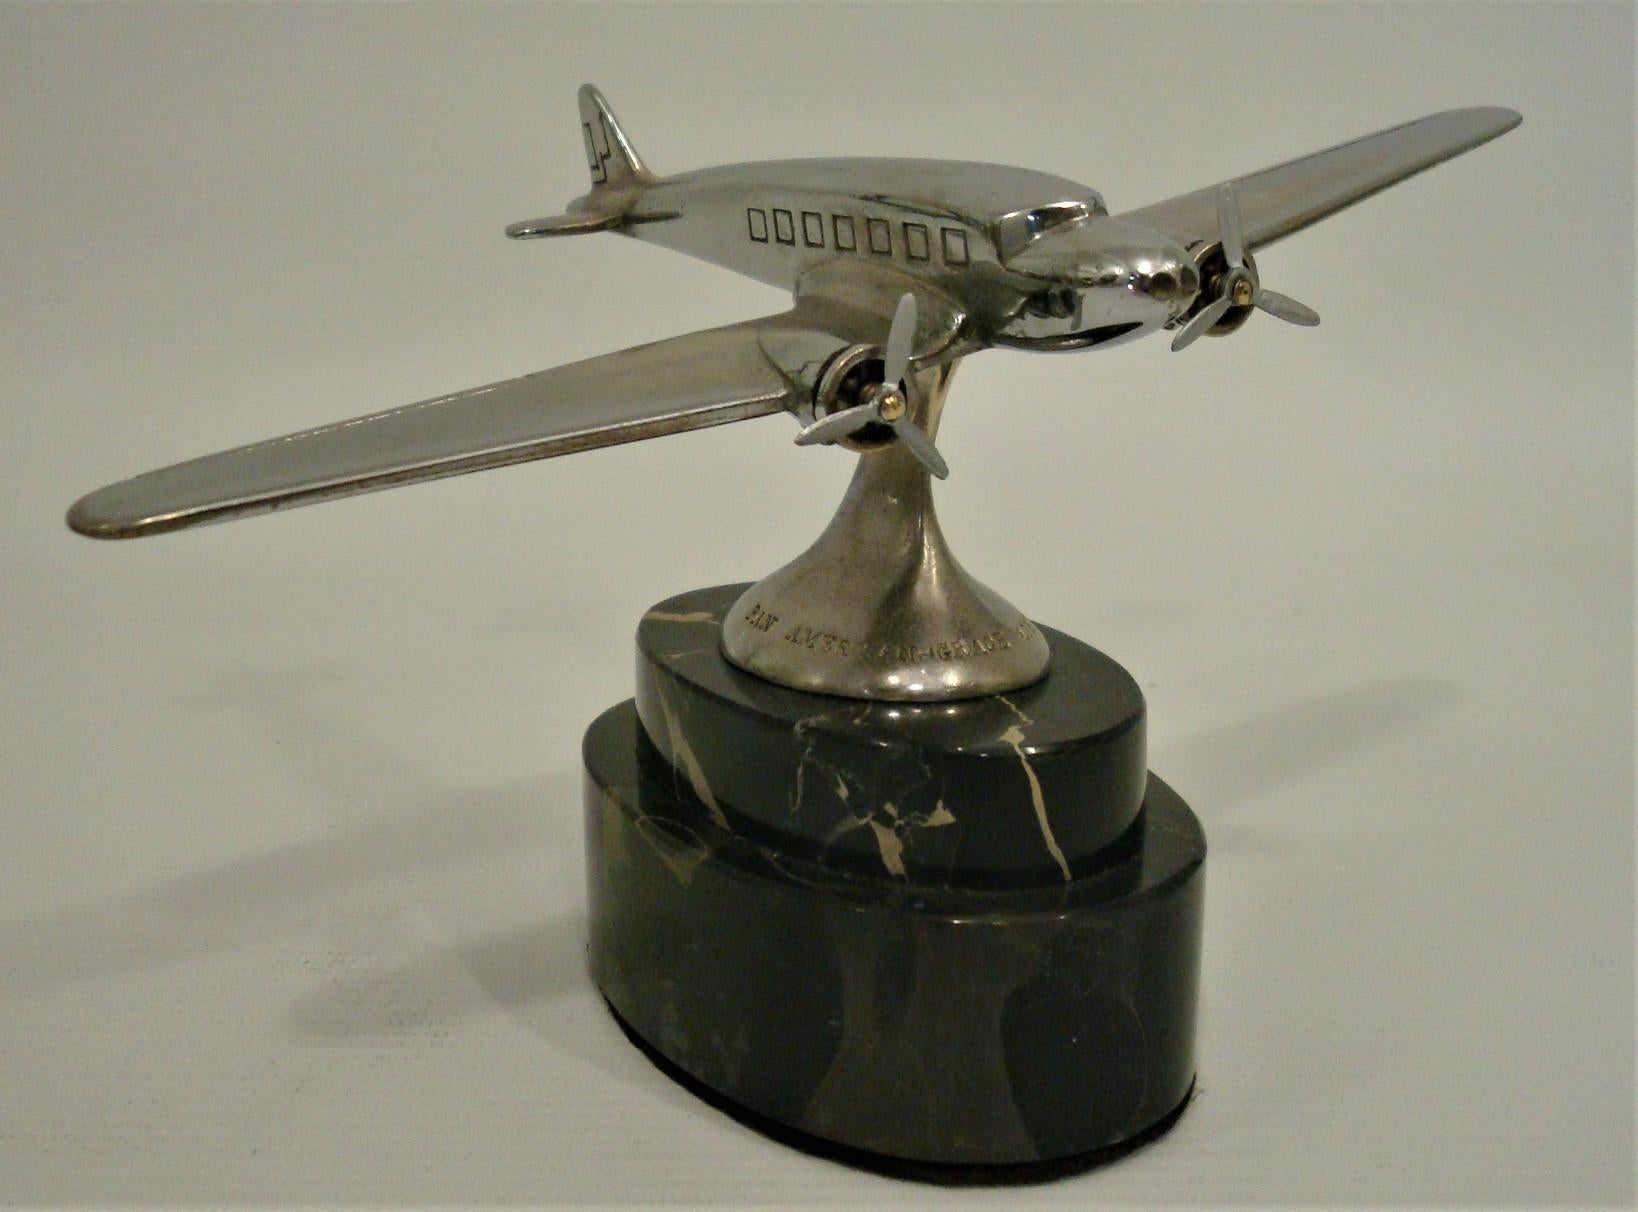 Presse-papier publicitaire Pan American - Grace Airways Airplane Model. 
circa 1930's.

Pan American-Grace Airways, également connue sous le nom de Panagra, et surnommée 